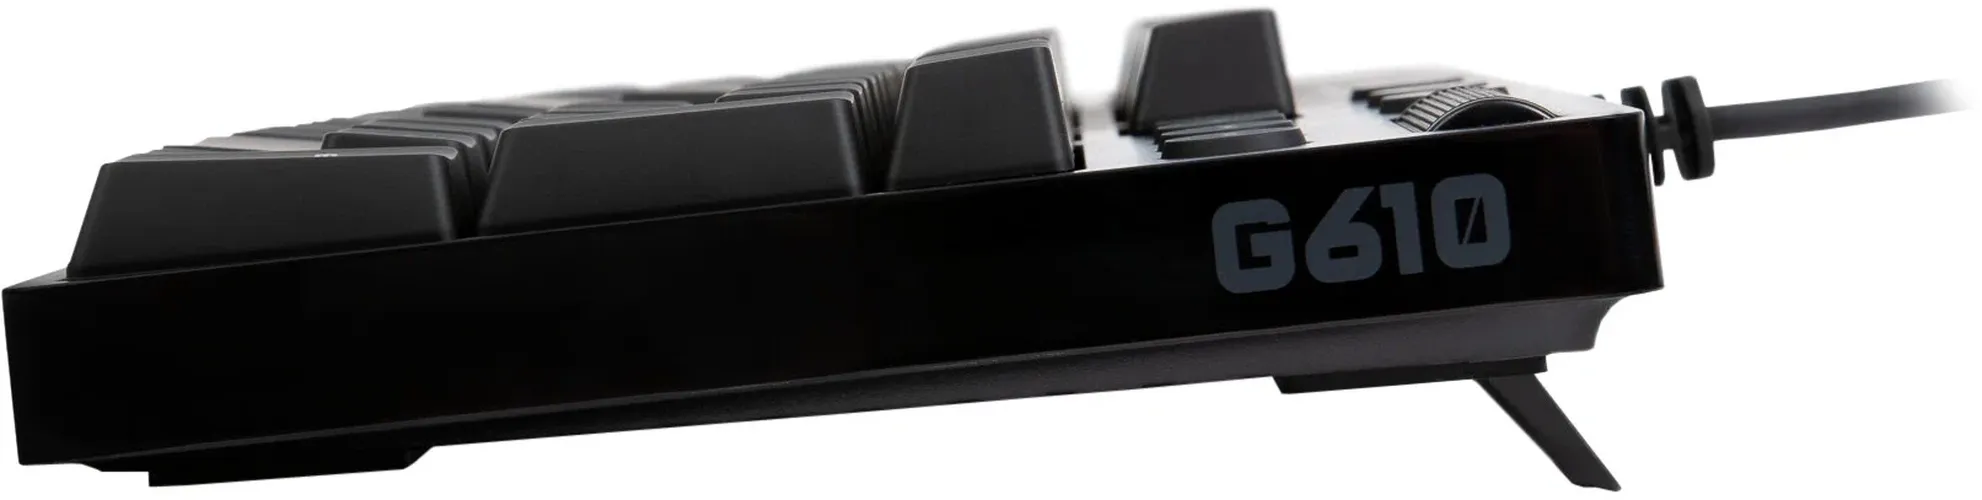 Игровая клавиатура Logitech G G610 Orion, фото